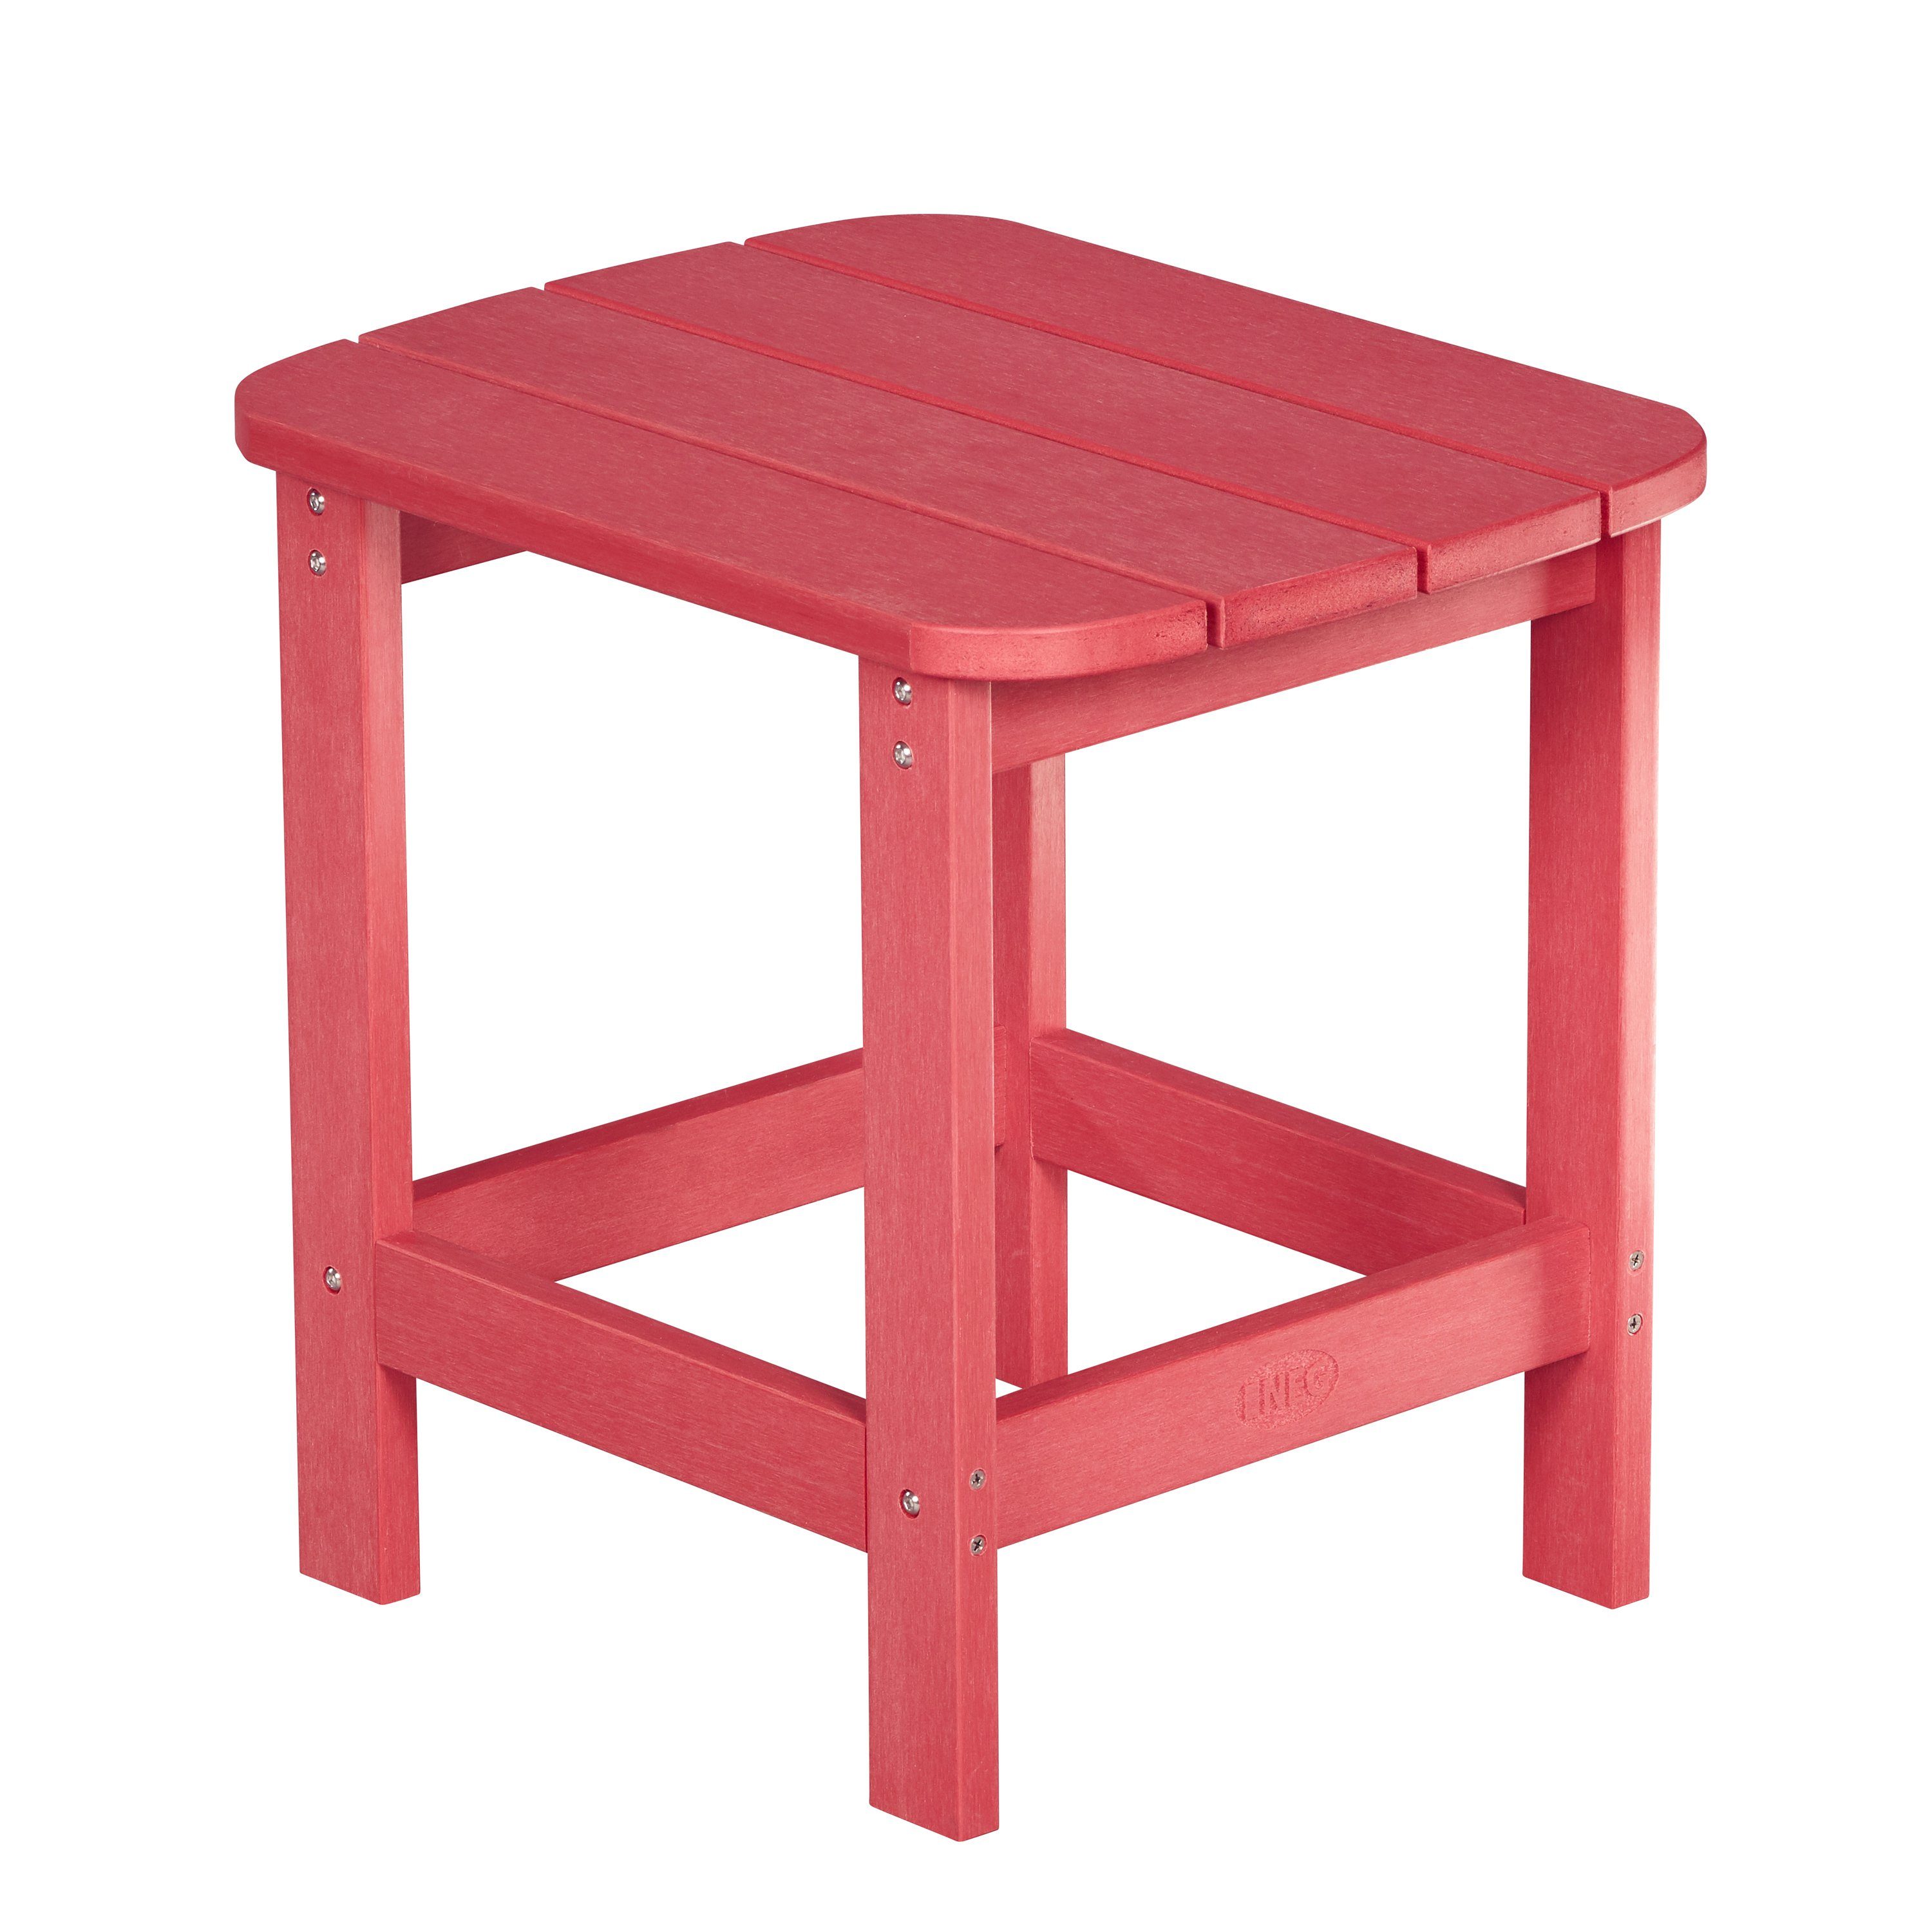 NEG Gartenstuhl NEG Adirondack Tisch/Beistelltisch rot MARCY